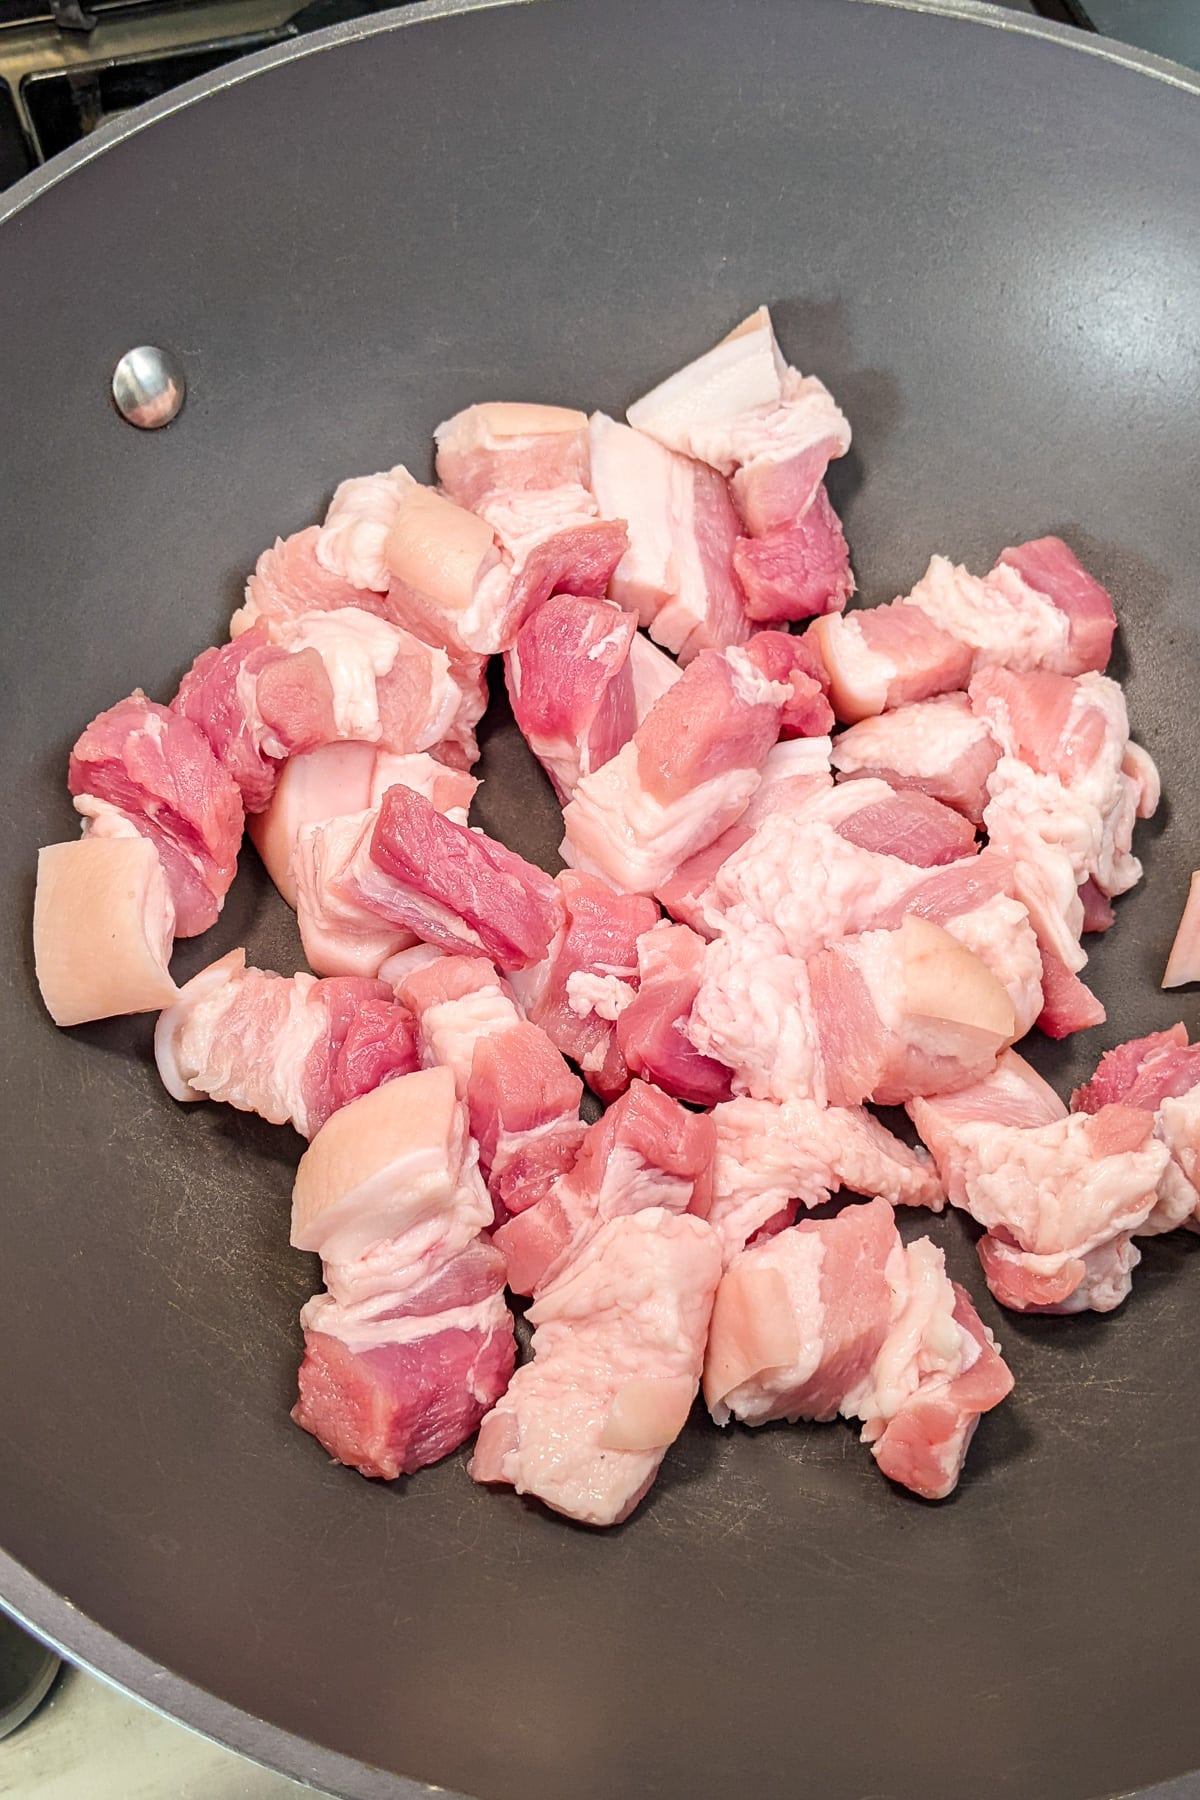 Raw pork belly in a wok.